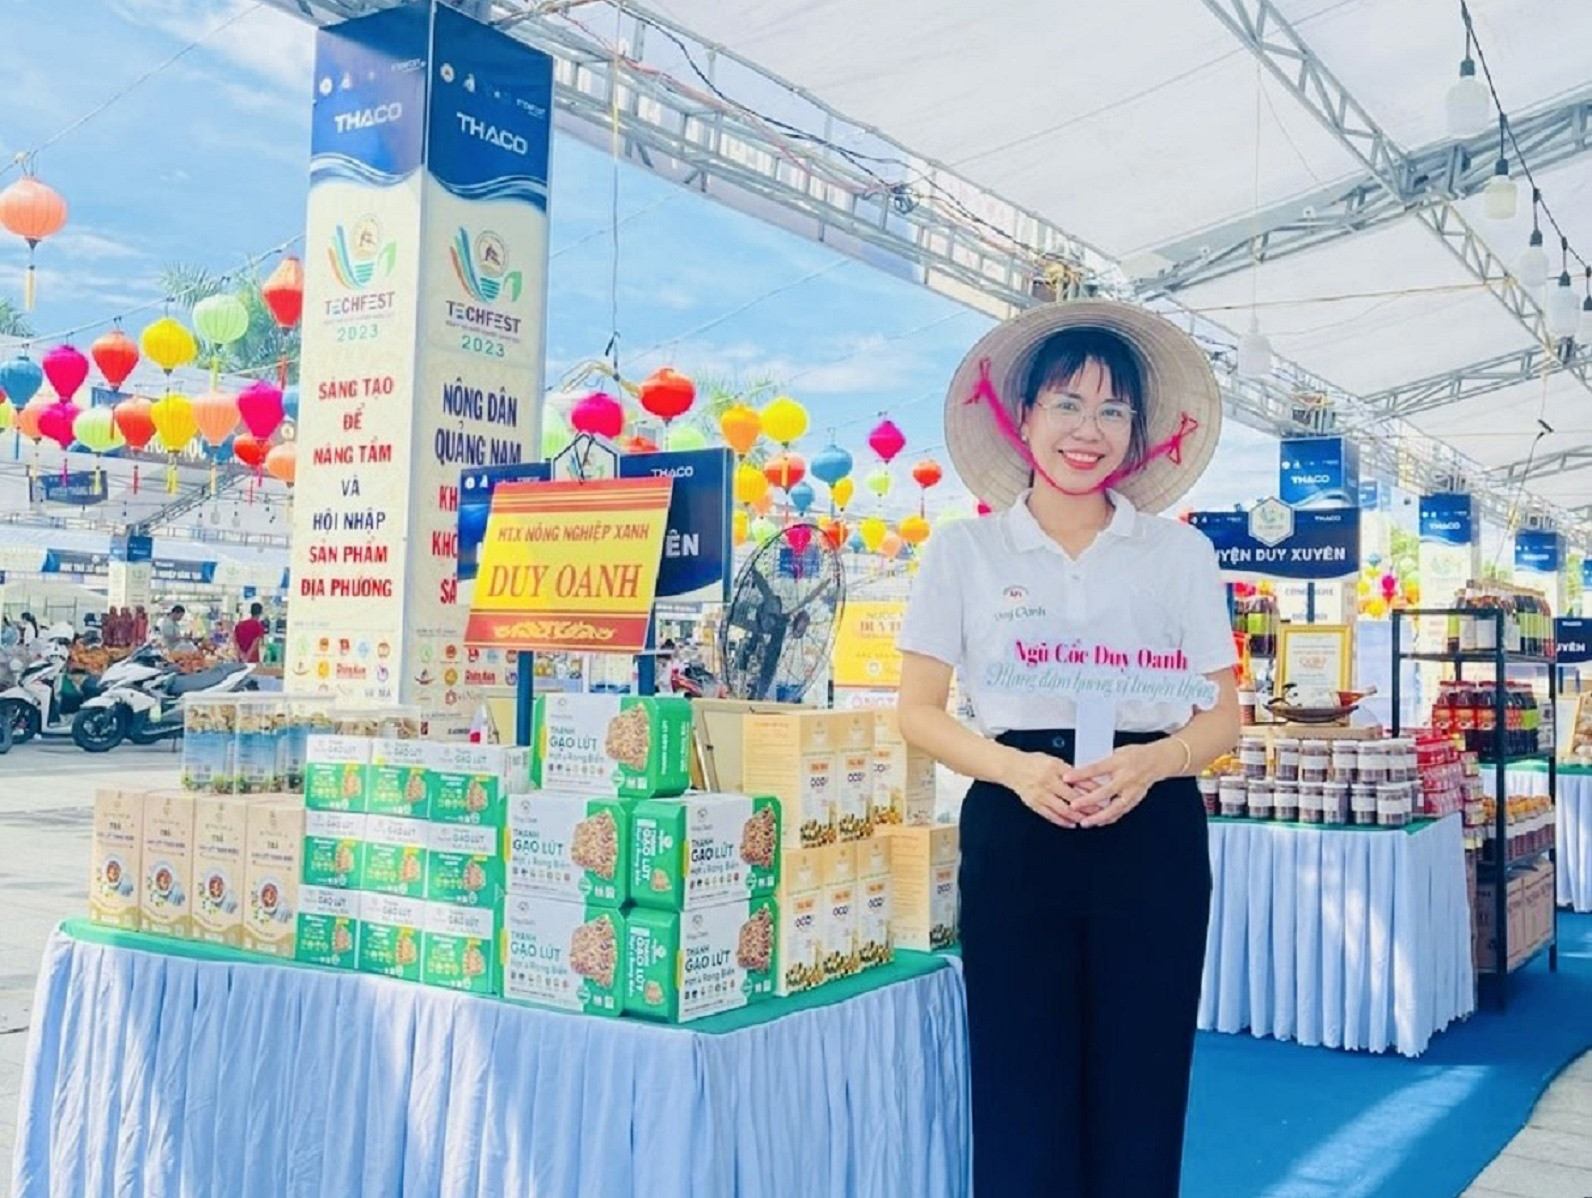 Bà Phạm Thị Duy Mỹ tham gia quảng bá sản phẩm thanh gạo lứt hạt và rong biển. Ảnh: N.T